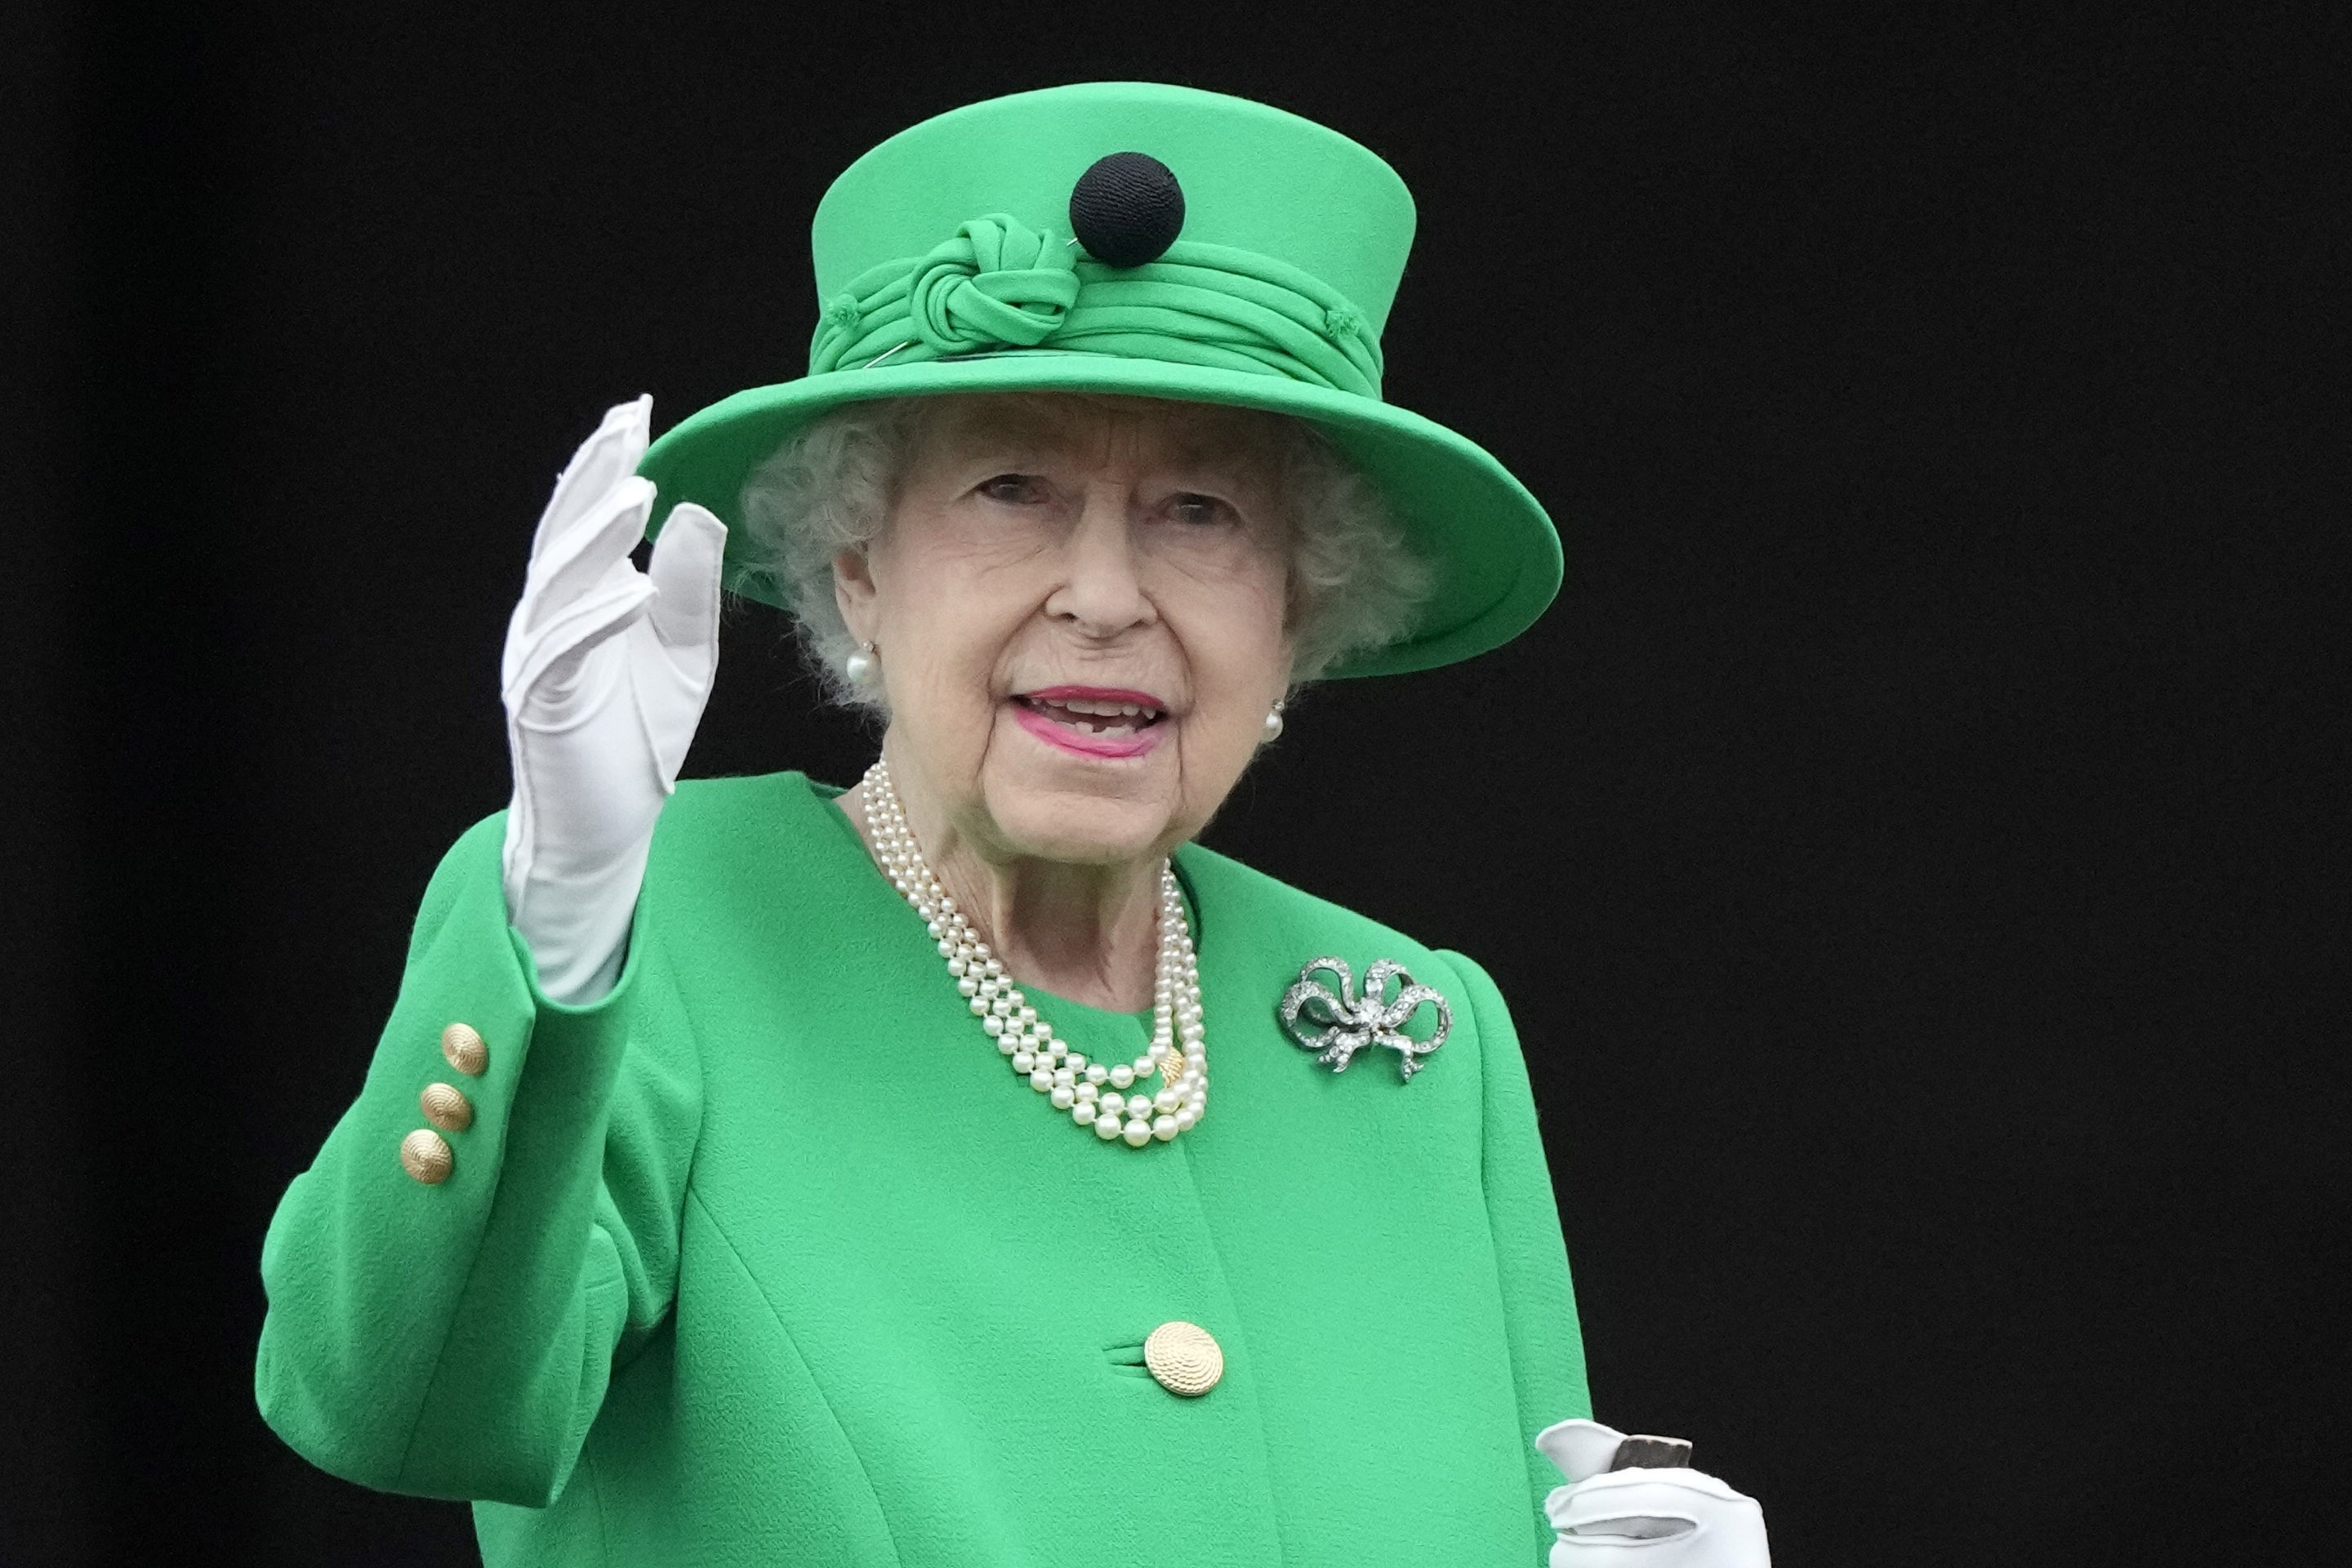 Tod von Queen Elizabeth II.: Wie geht es nun weiter?